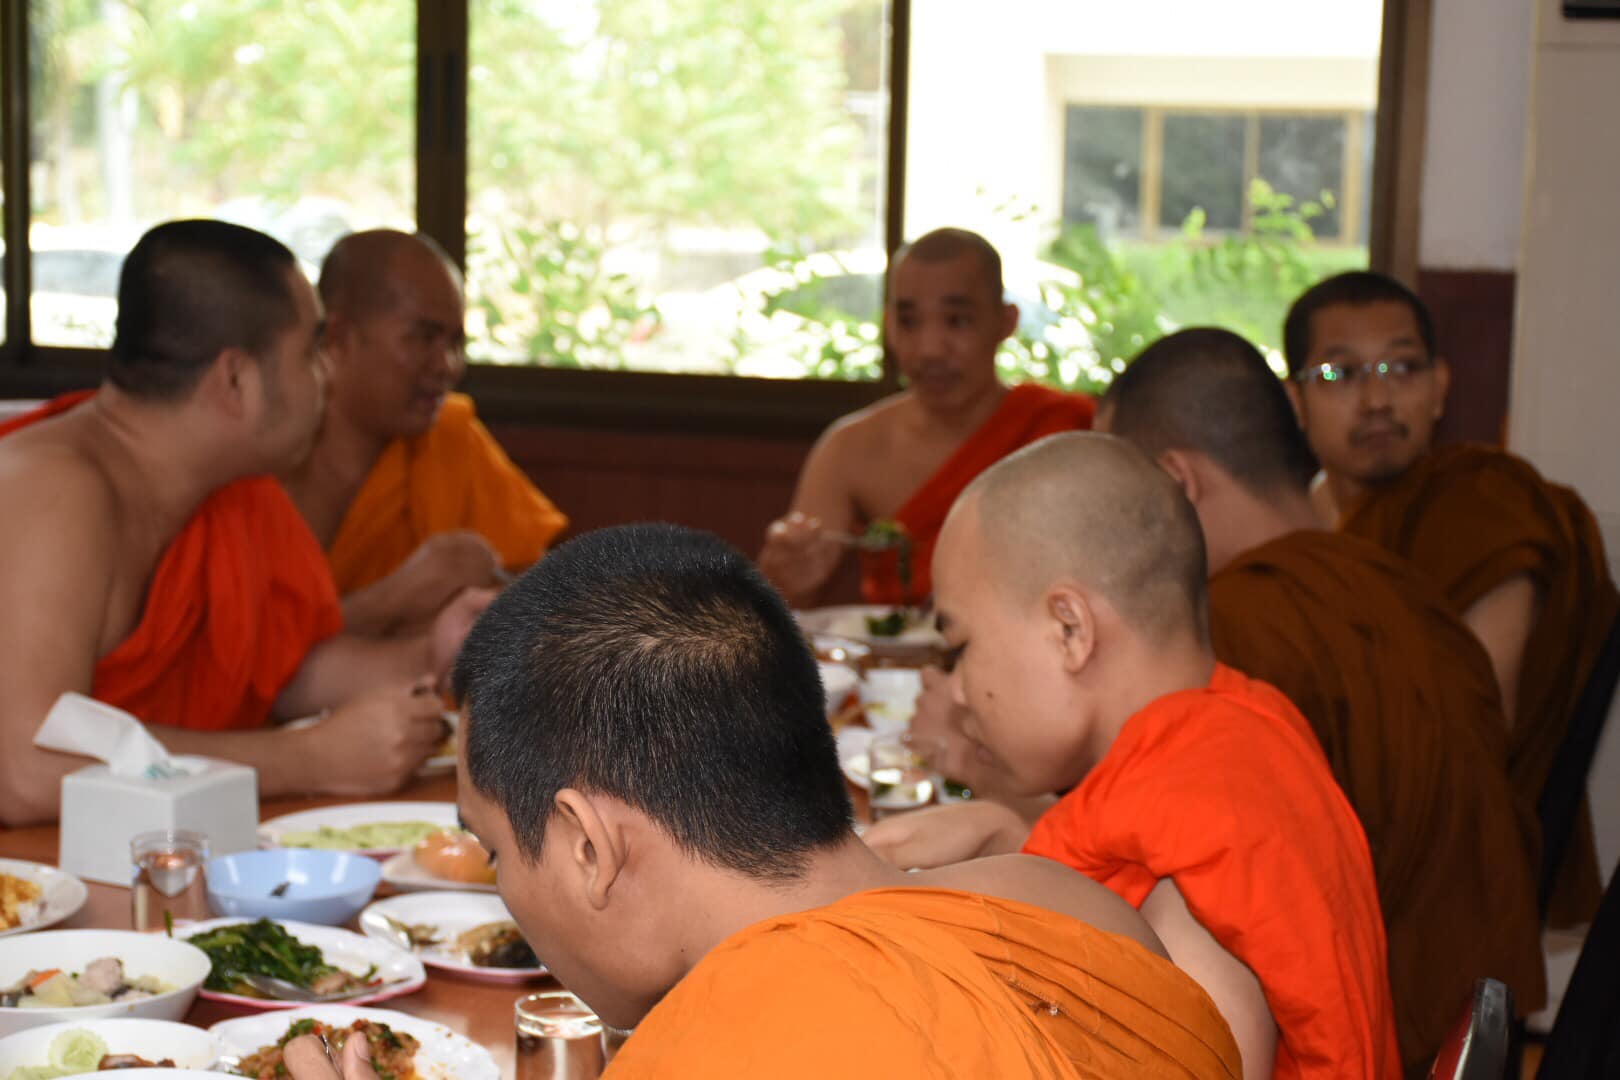 Mon Buddhist Students Society